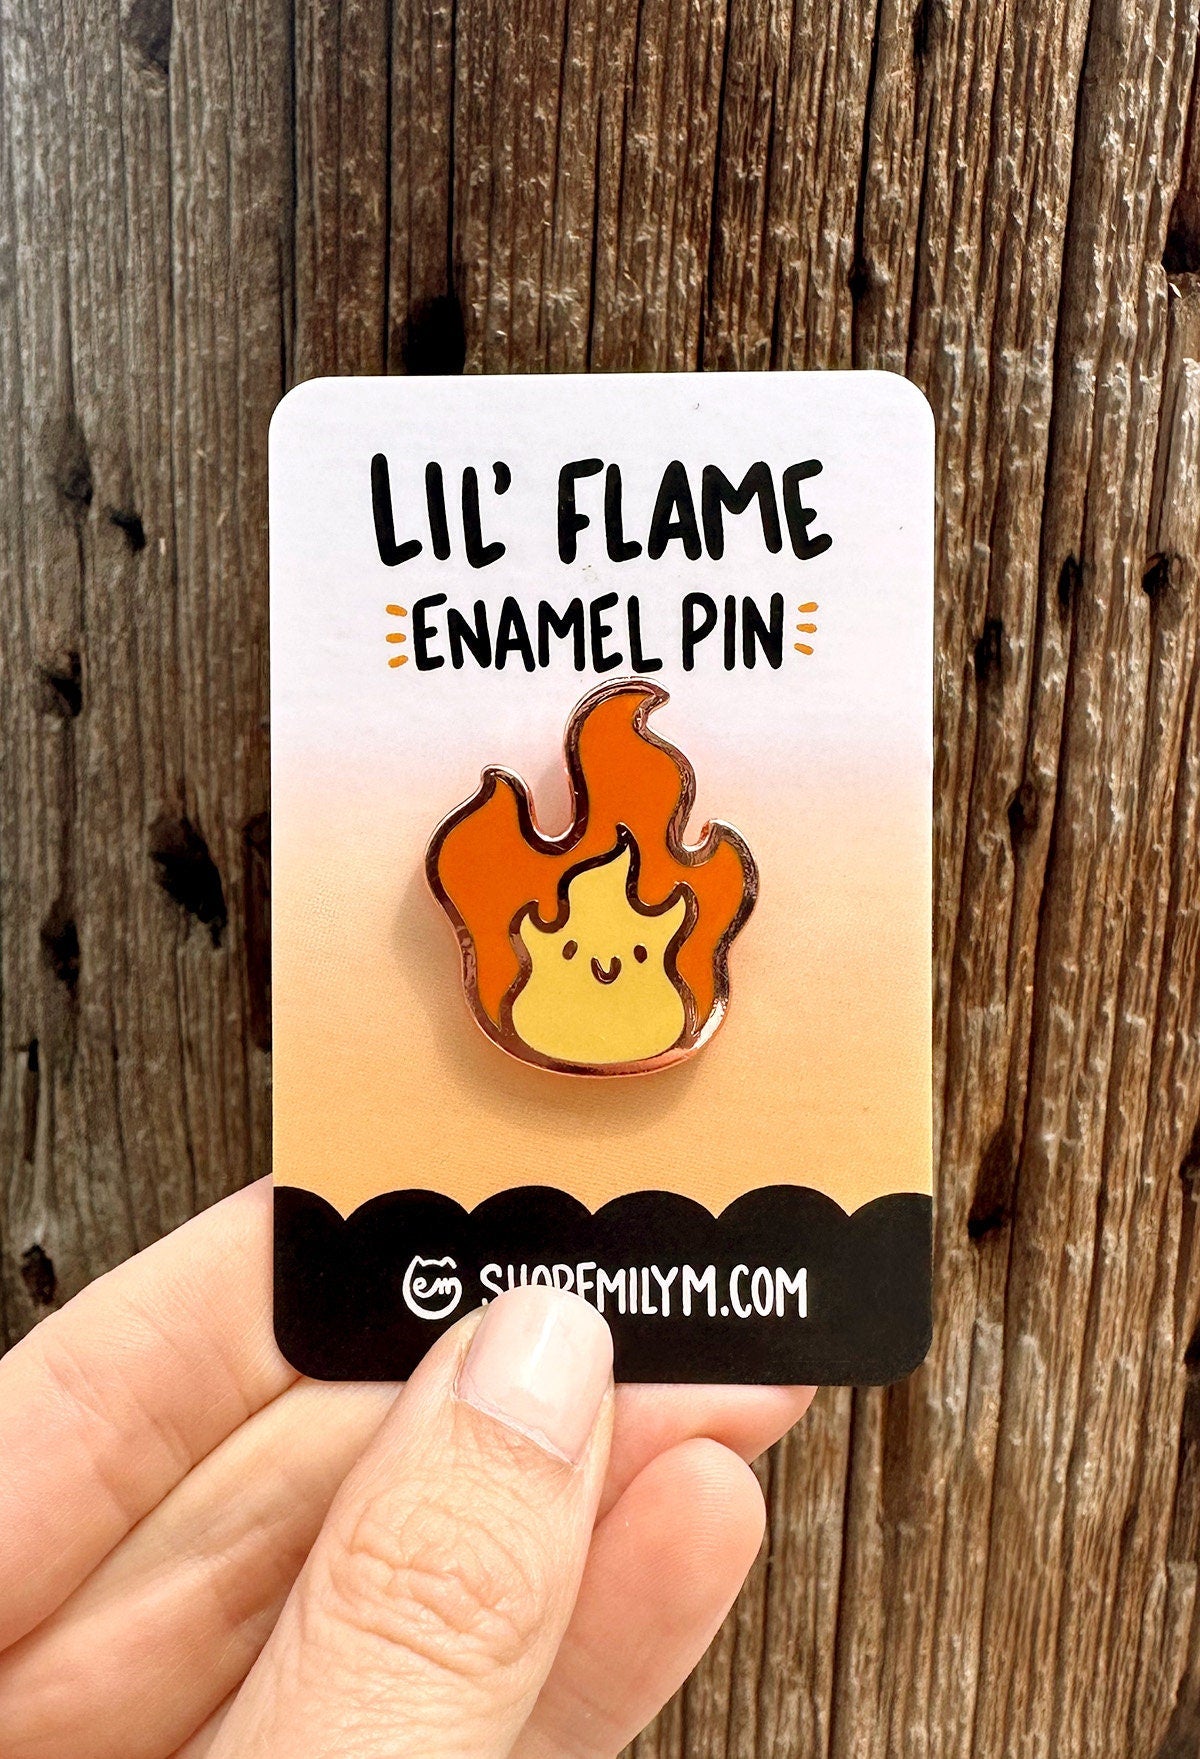 Flame Enamel Pin